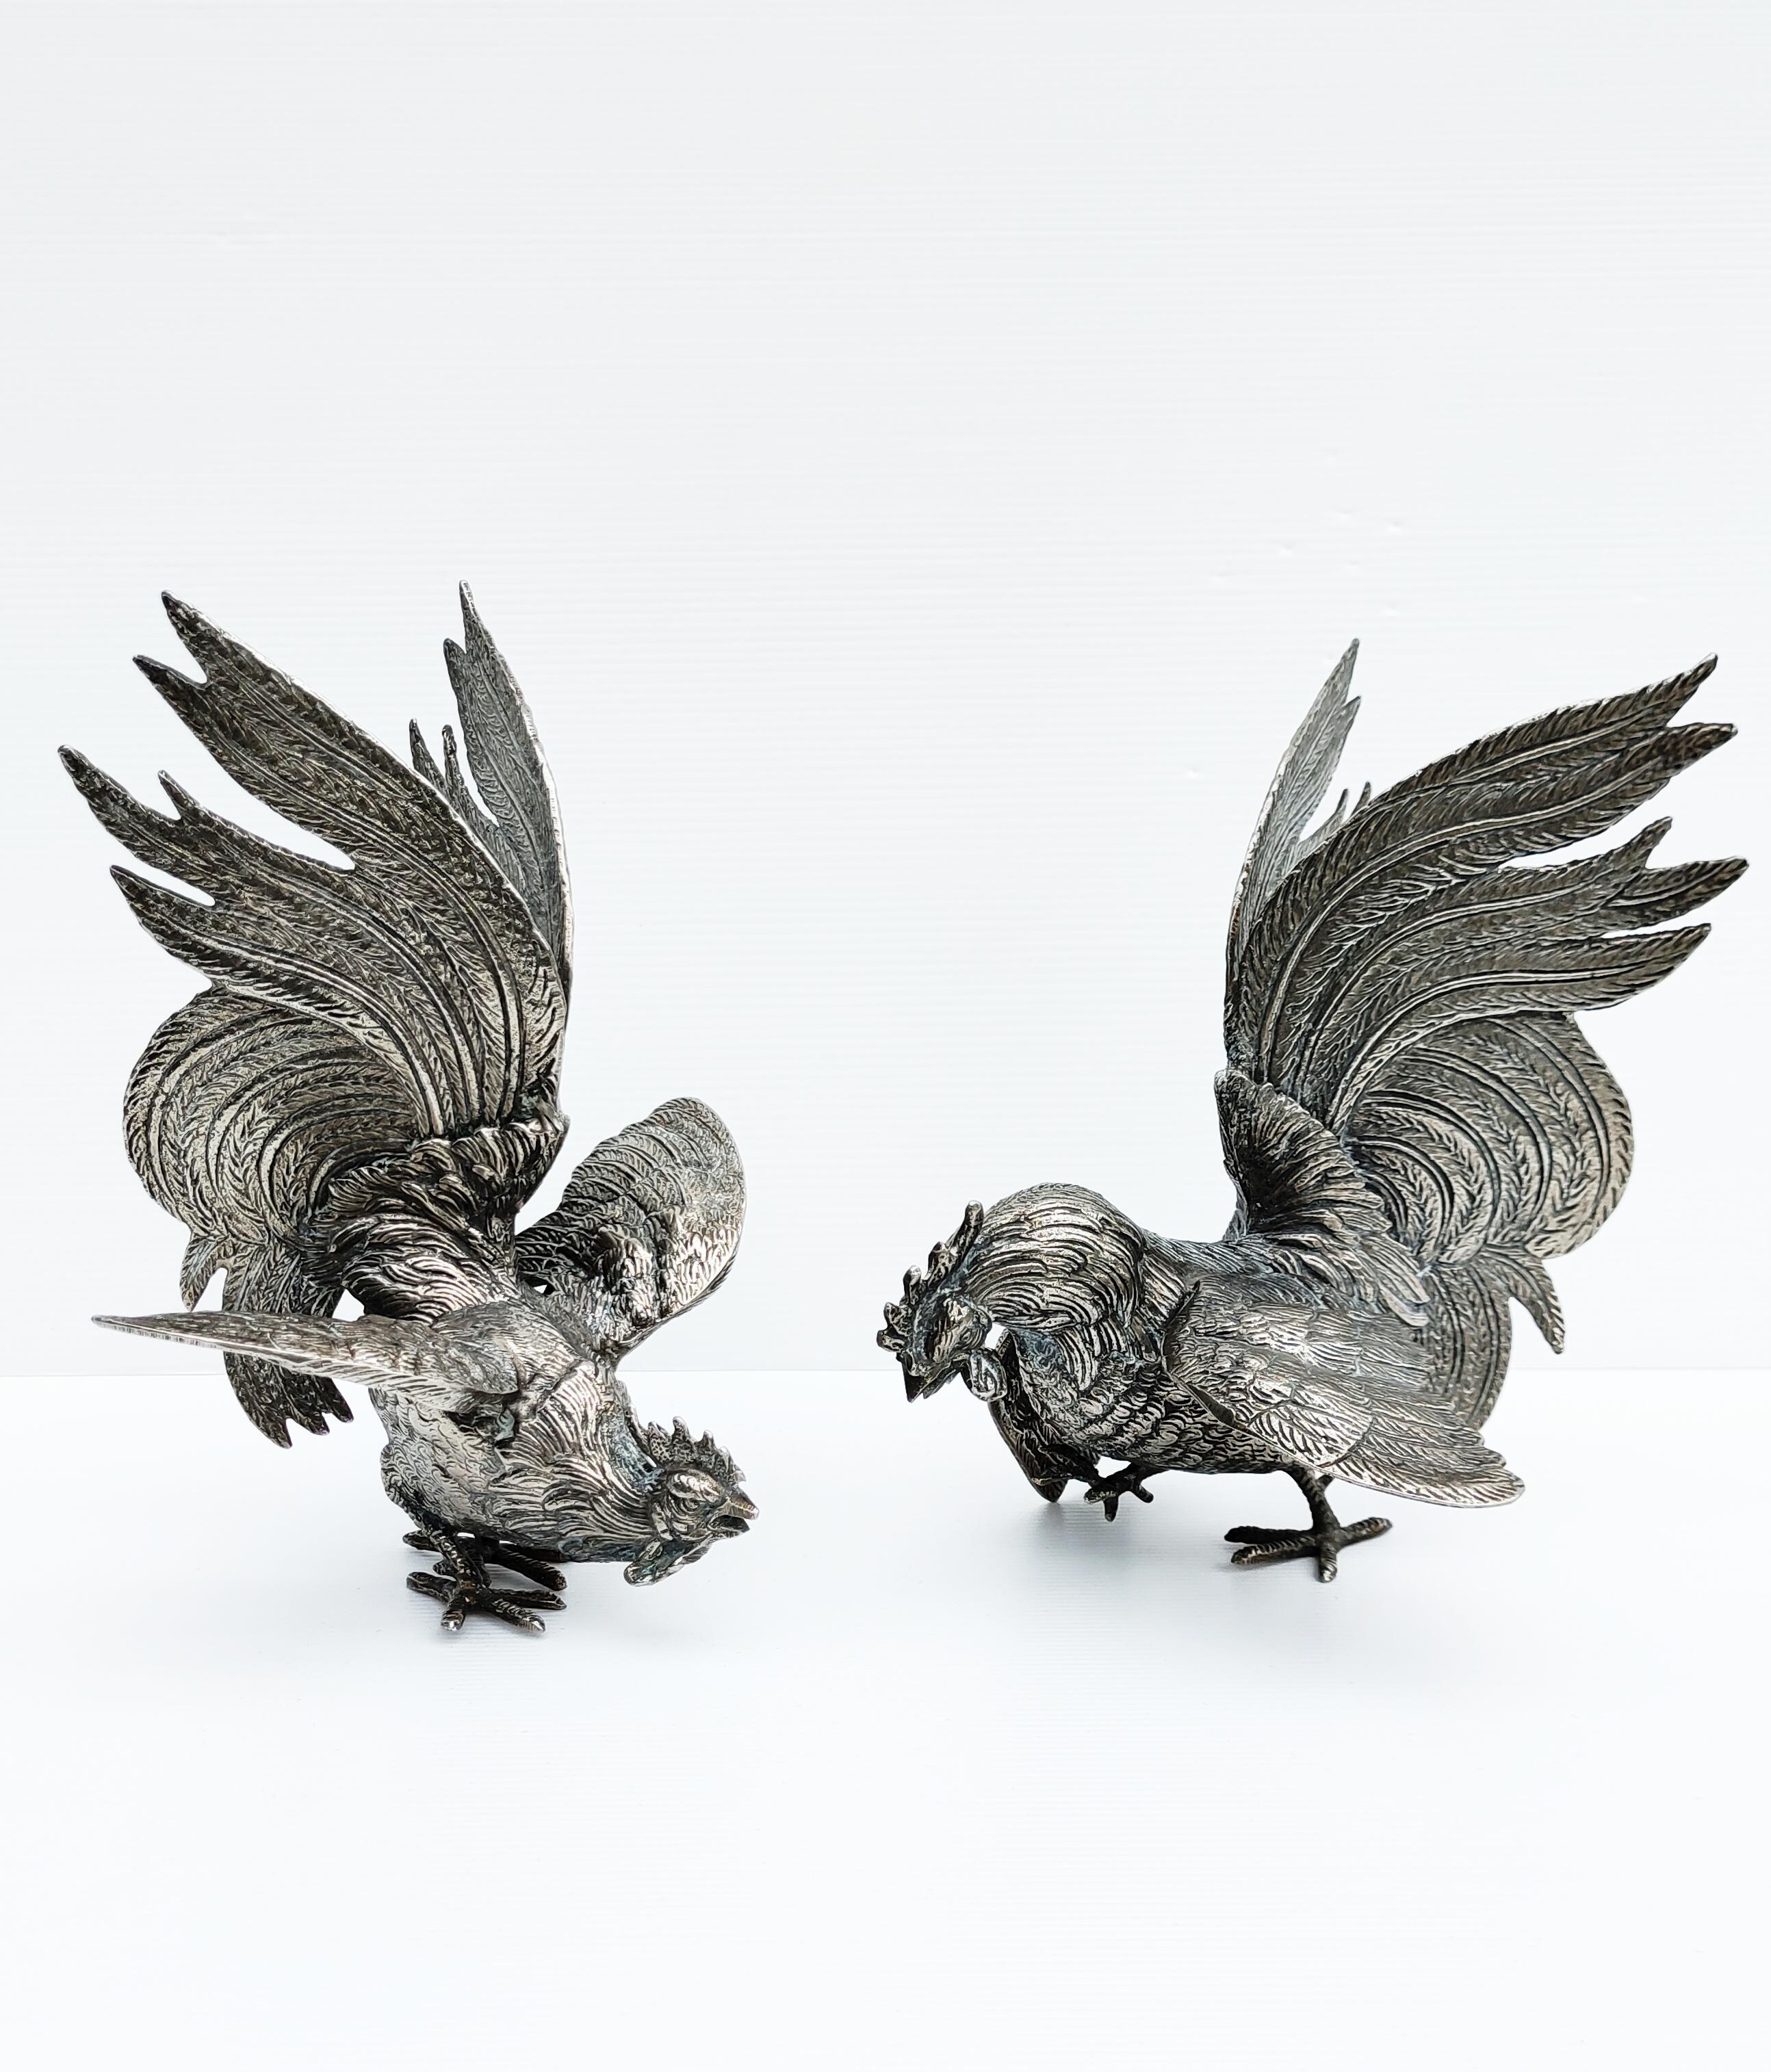 Rares et magnifiques coqs en métal argenté fabriqués en France dans les années 1960.
Coqs en attitude de combat. Ces coqs de combat sont créés avec un grand souci du détail et une attention particulière portée aux plumes et au plumage. Les deux